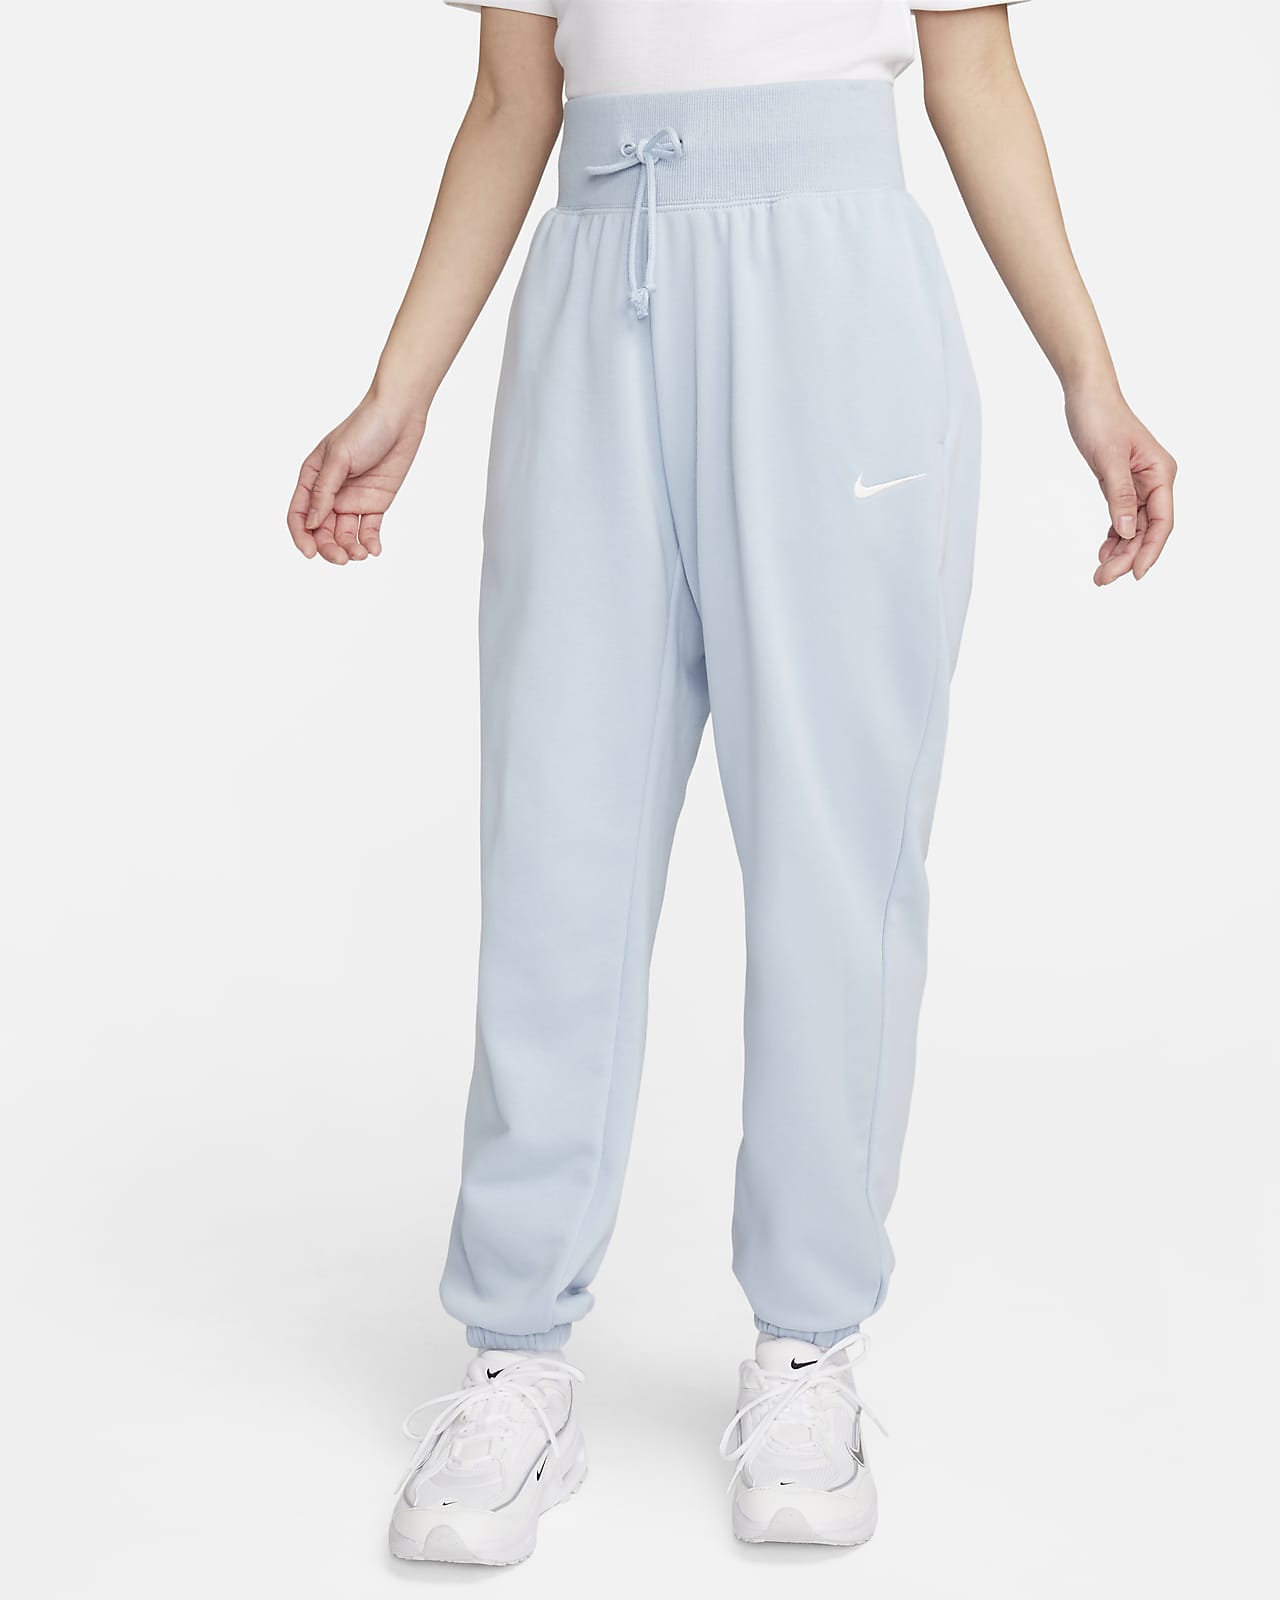 Nike Sportswear Phoenix Fleece 女款高腰寬版毛圈布運動褲